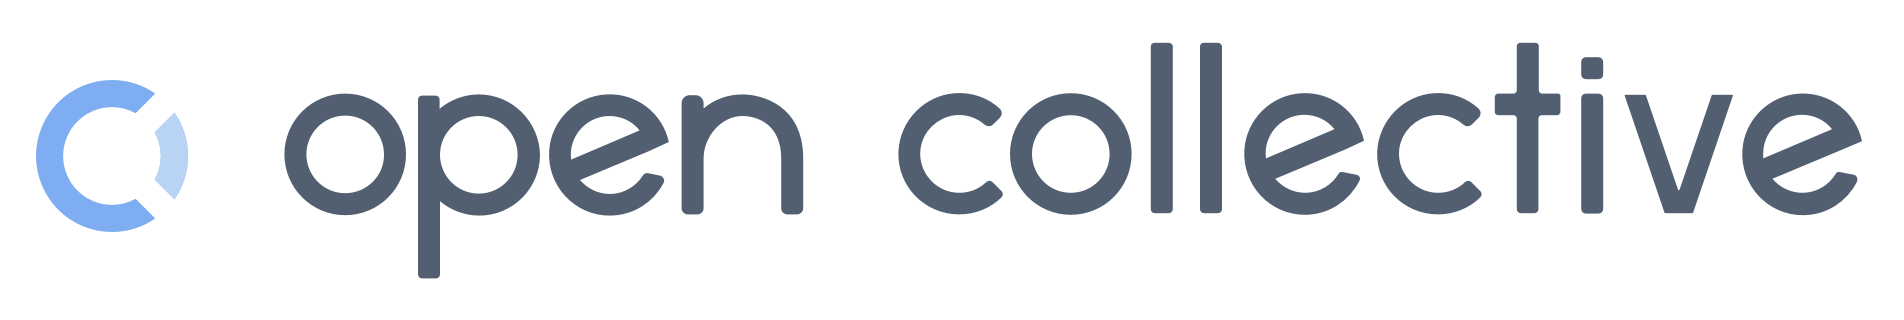 OpenCollective logo